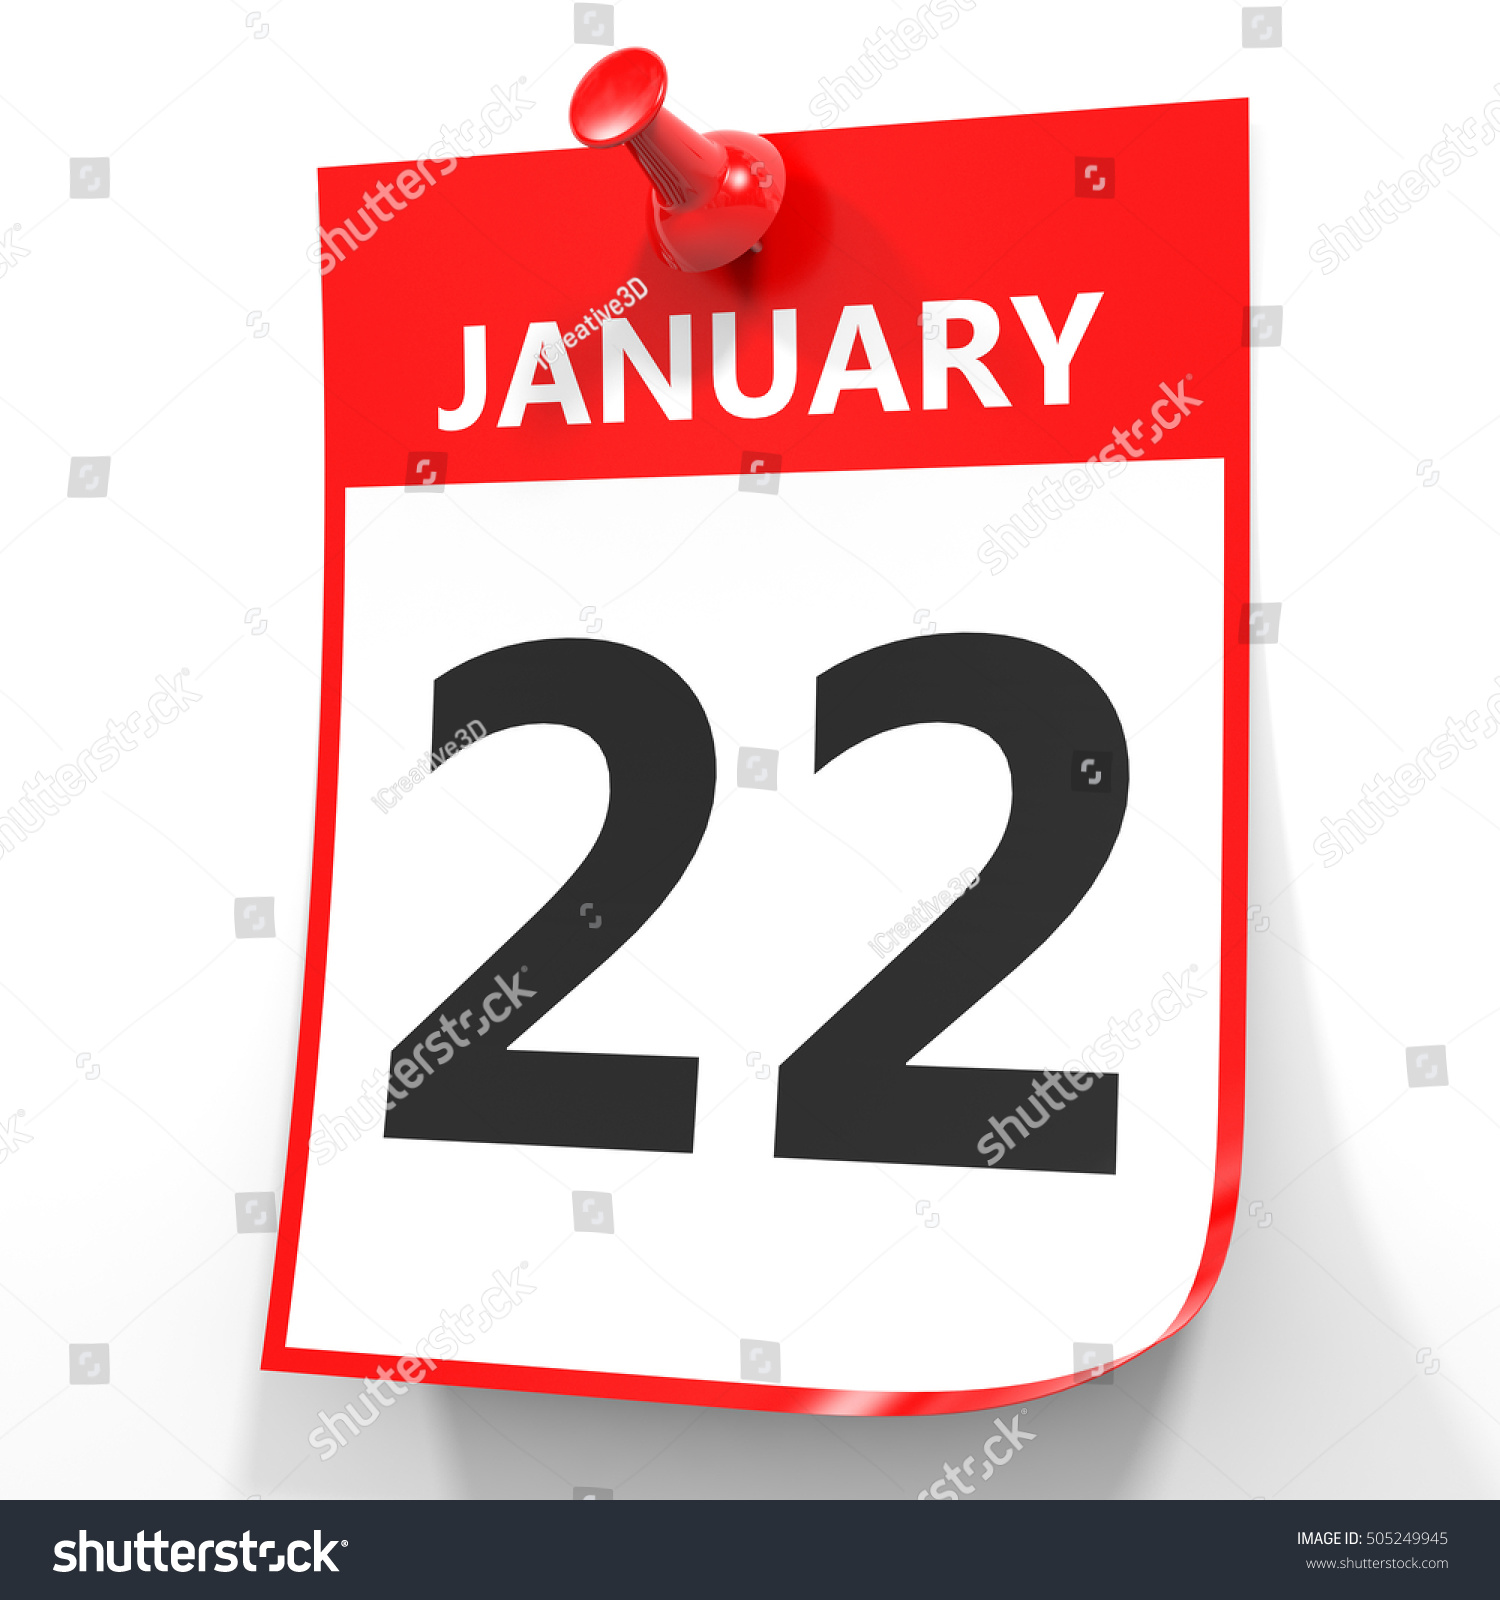 january-22-calendar-on-white-background-stock-illustration-505249945-shutterstock